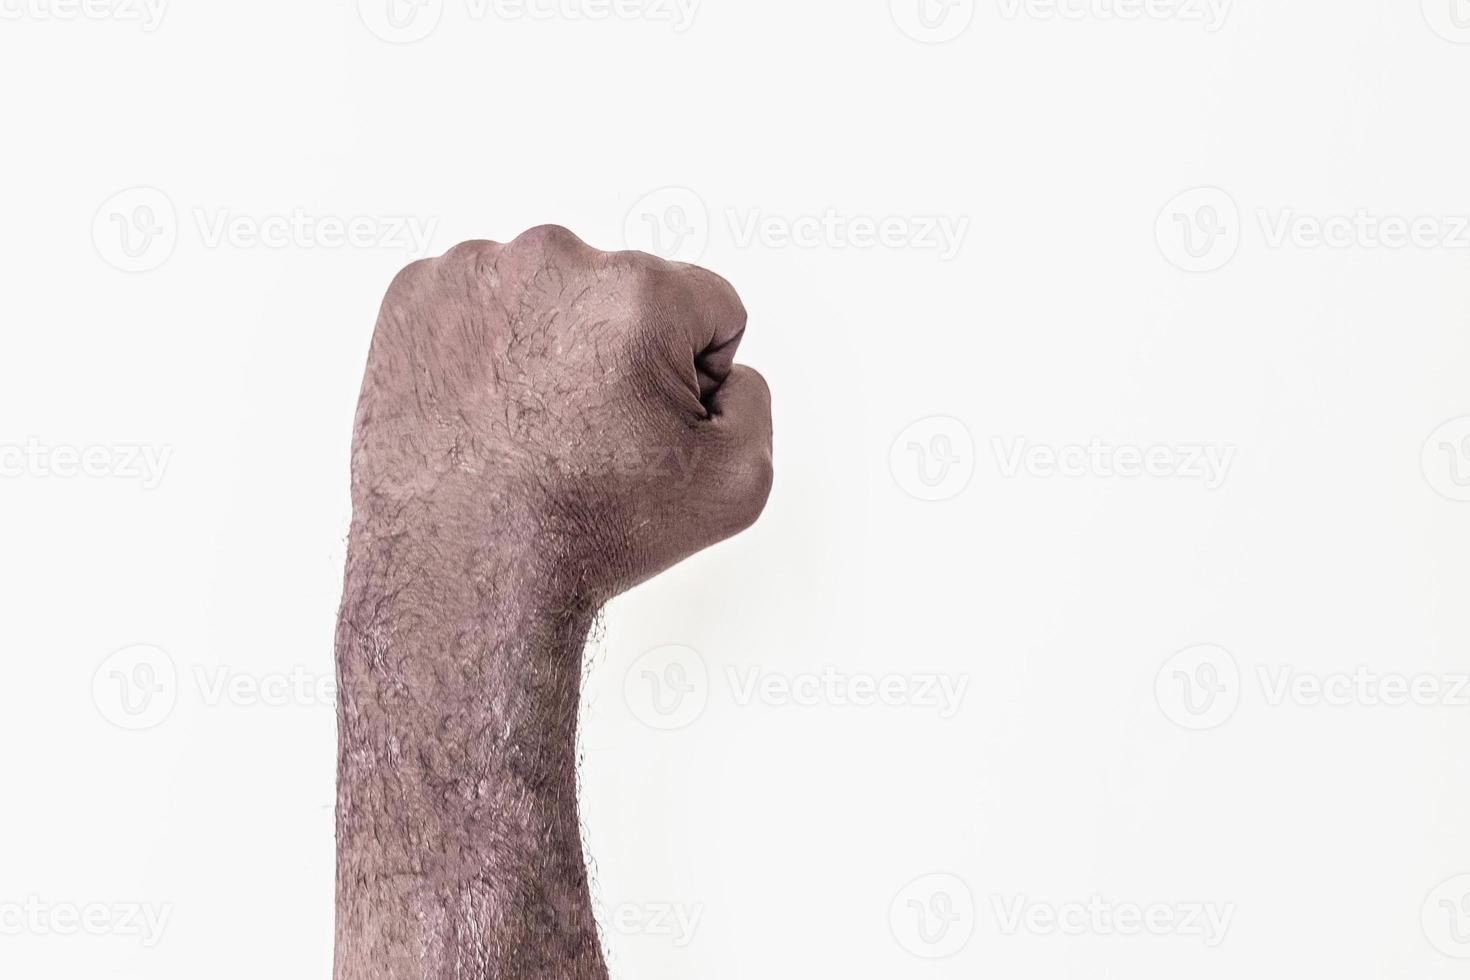 mannenhand gebald in een vuist op een witte achtergrond. een symbool van de strijd voor de rechten van zwarten in Amerika. protesteren tegen racisme. foto